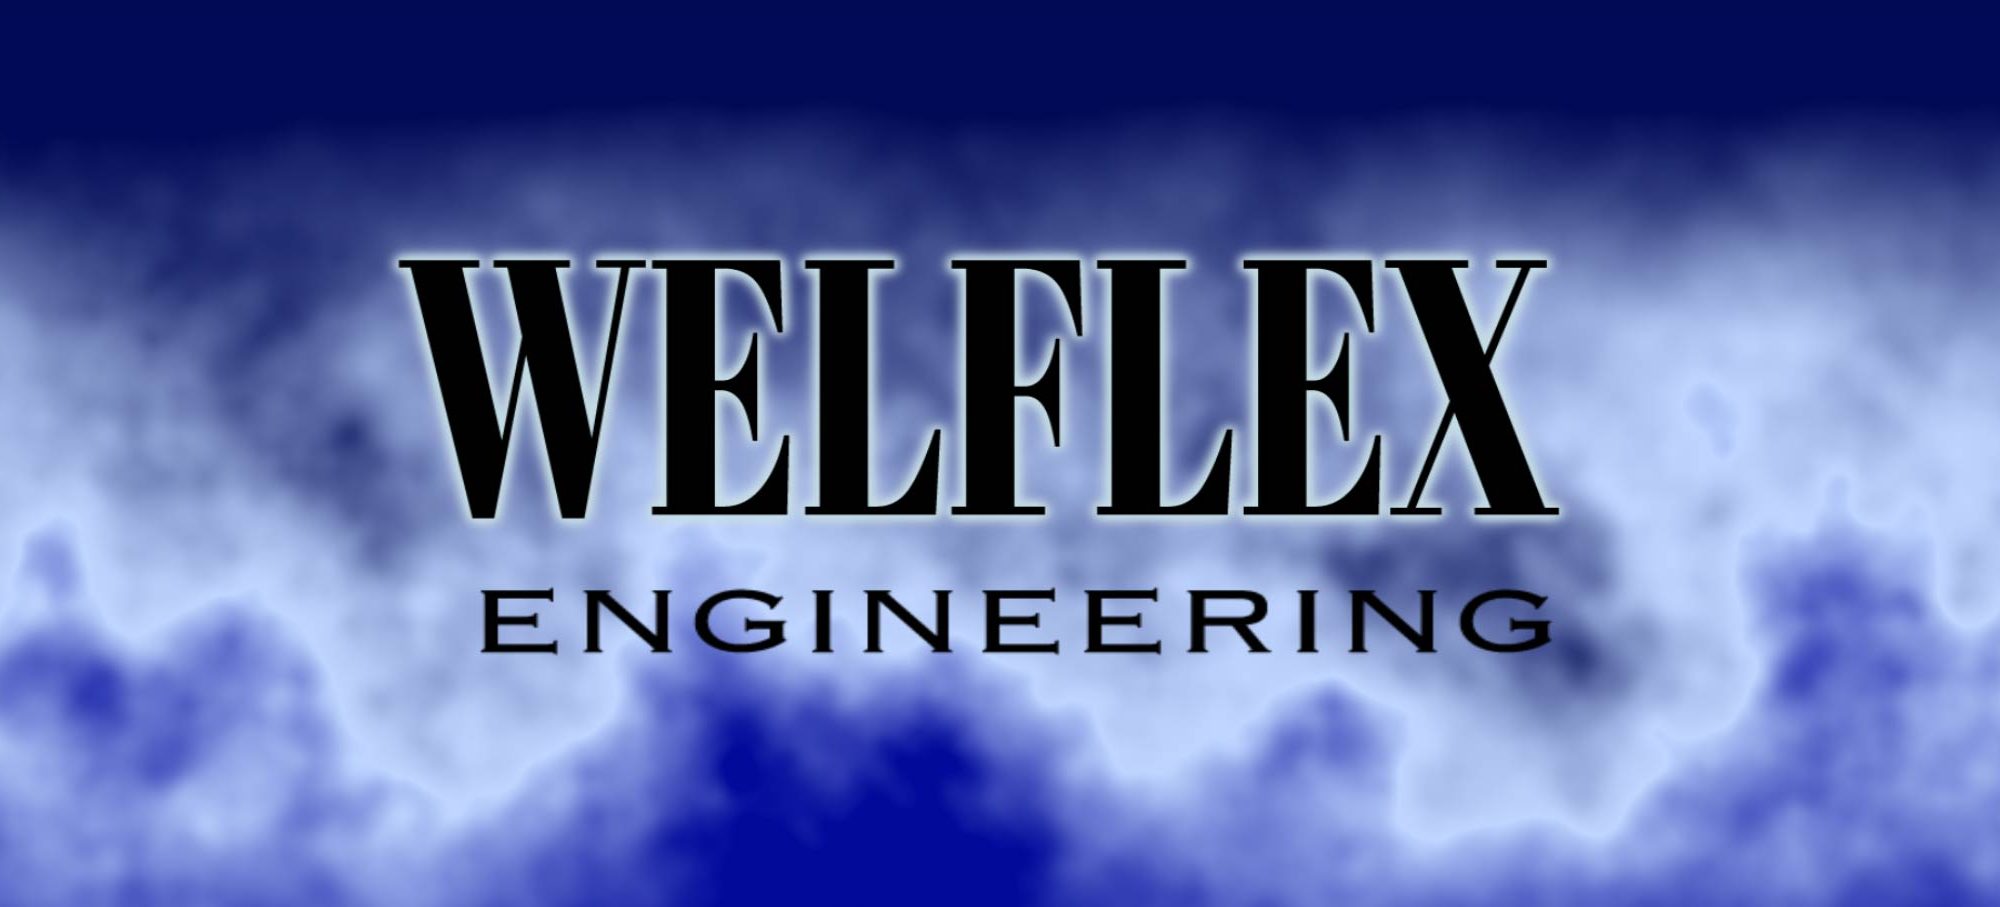 Welflex Engineering Sdn Bhd | Brunei Darussalam